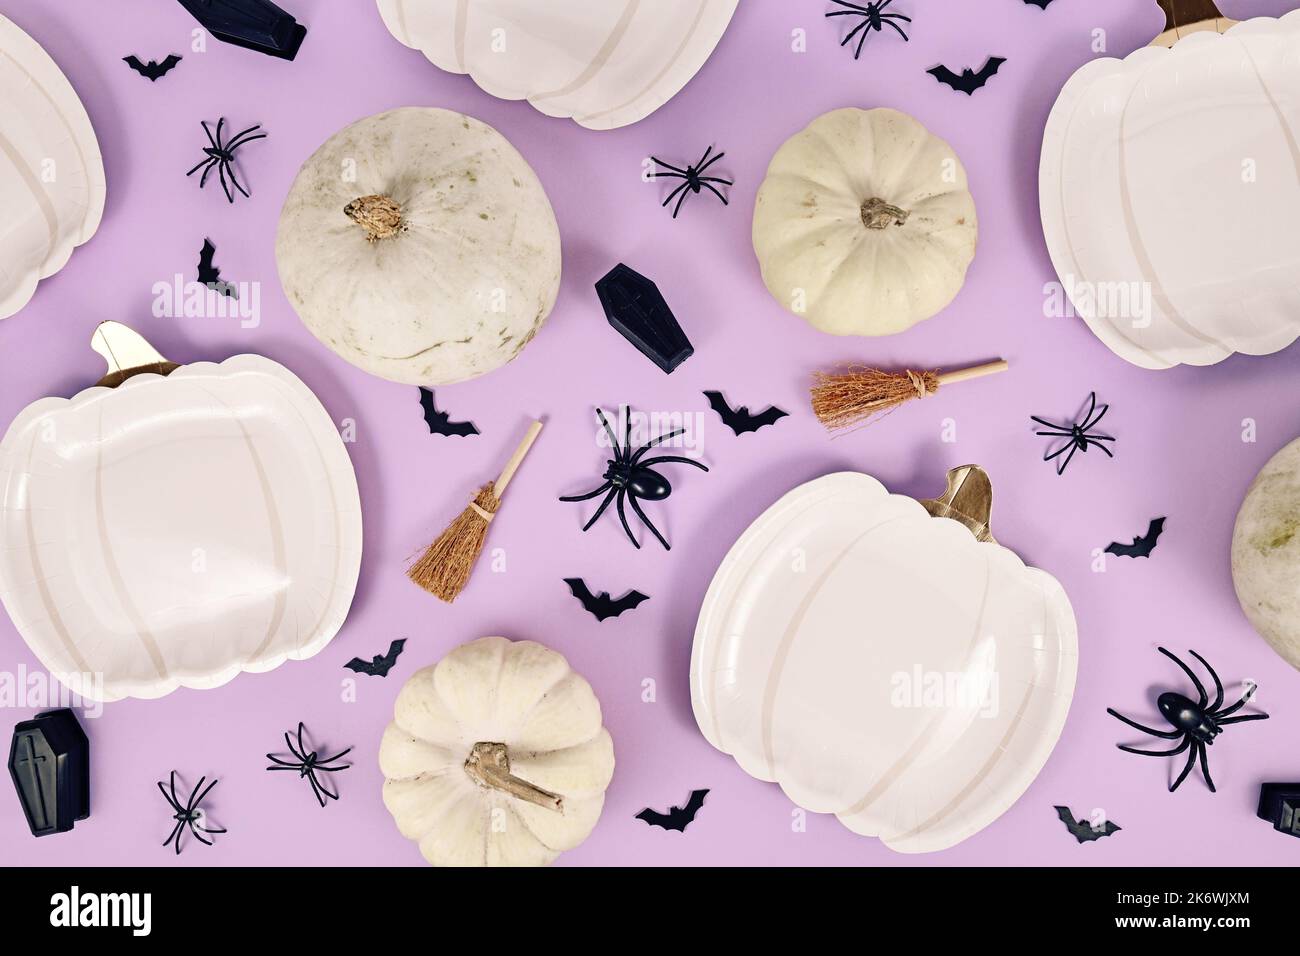 Halloween Party Flat Lay avec des assiettes en forme de citrouille, des citrouilles, un balai de sorcière, des araignées et des cercueils sur fond violet Banque D'Images